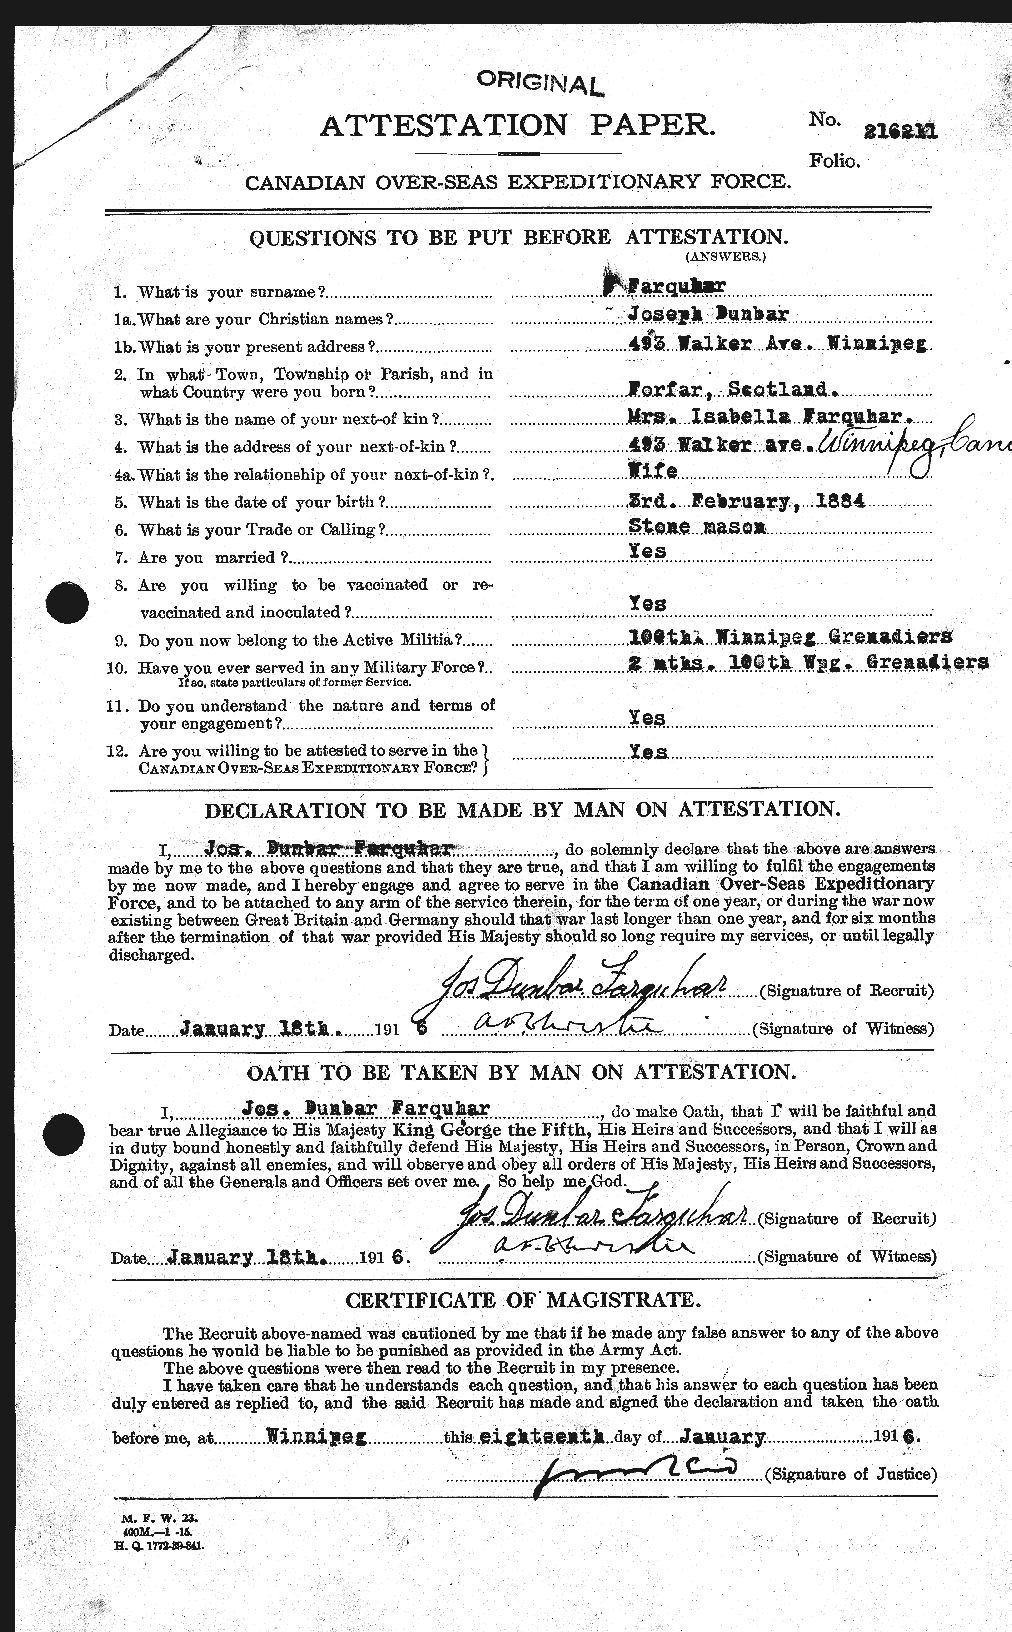 Dossiers du Personnel de la Première Guerre mondiale - CEC 318787a